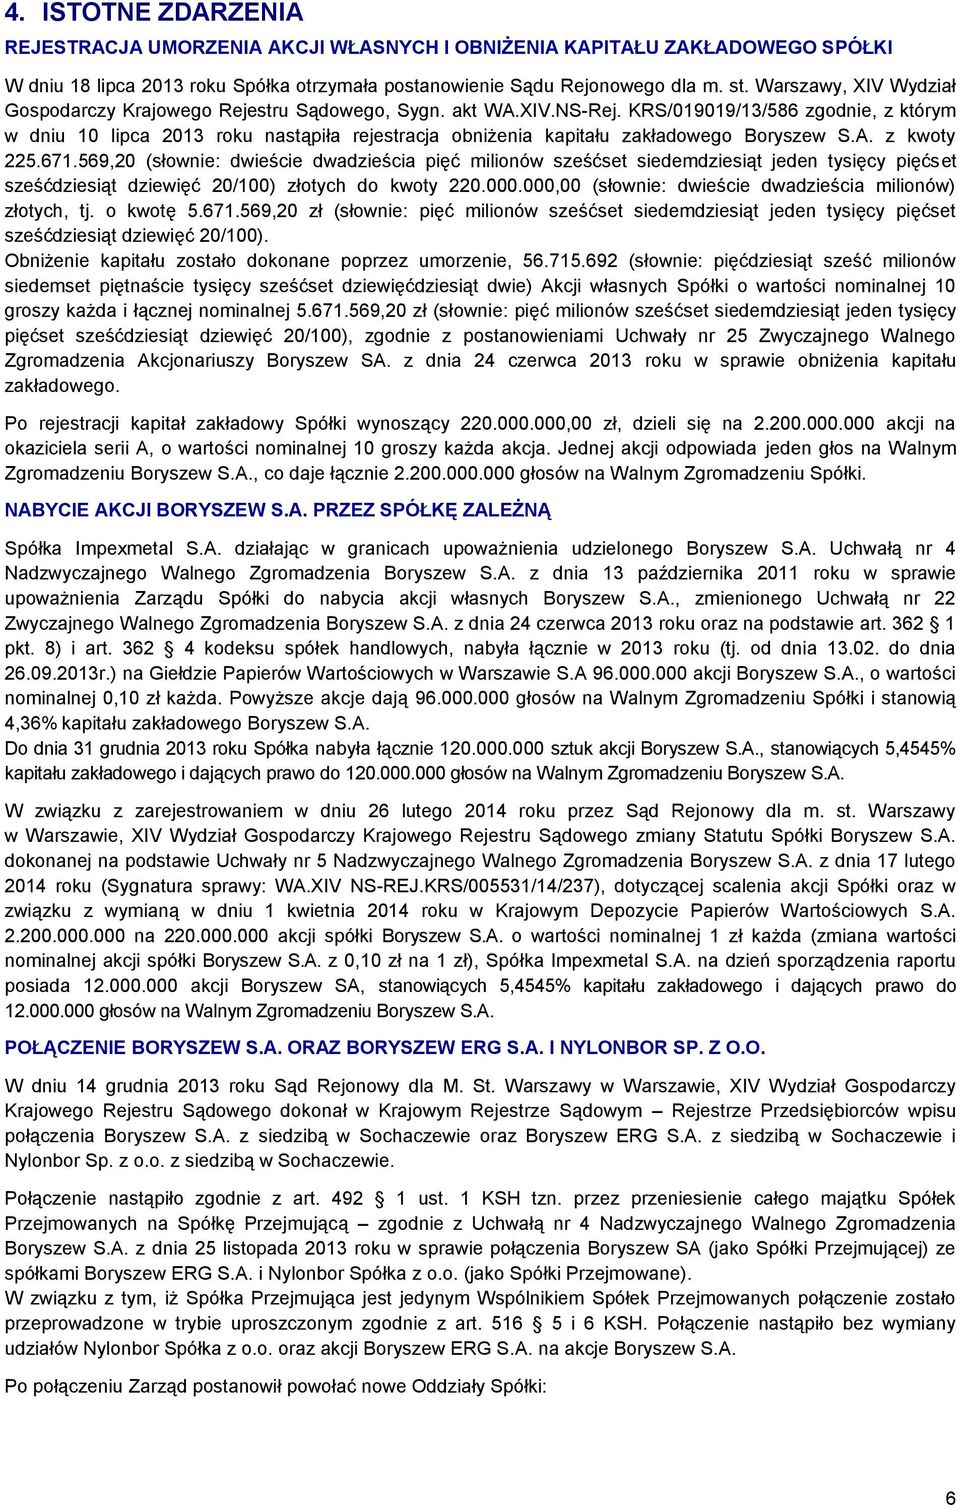 KRS/019019/13/586 zgodnie, z którym w dniu 10 lipca 2013 roku nastąpiła rejestracja obniżenia kapitału zakładowego Boryszew S.A. z kwoty 225.671.